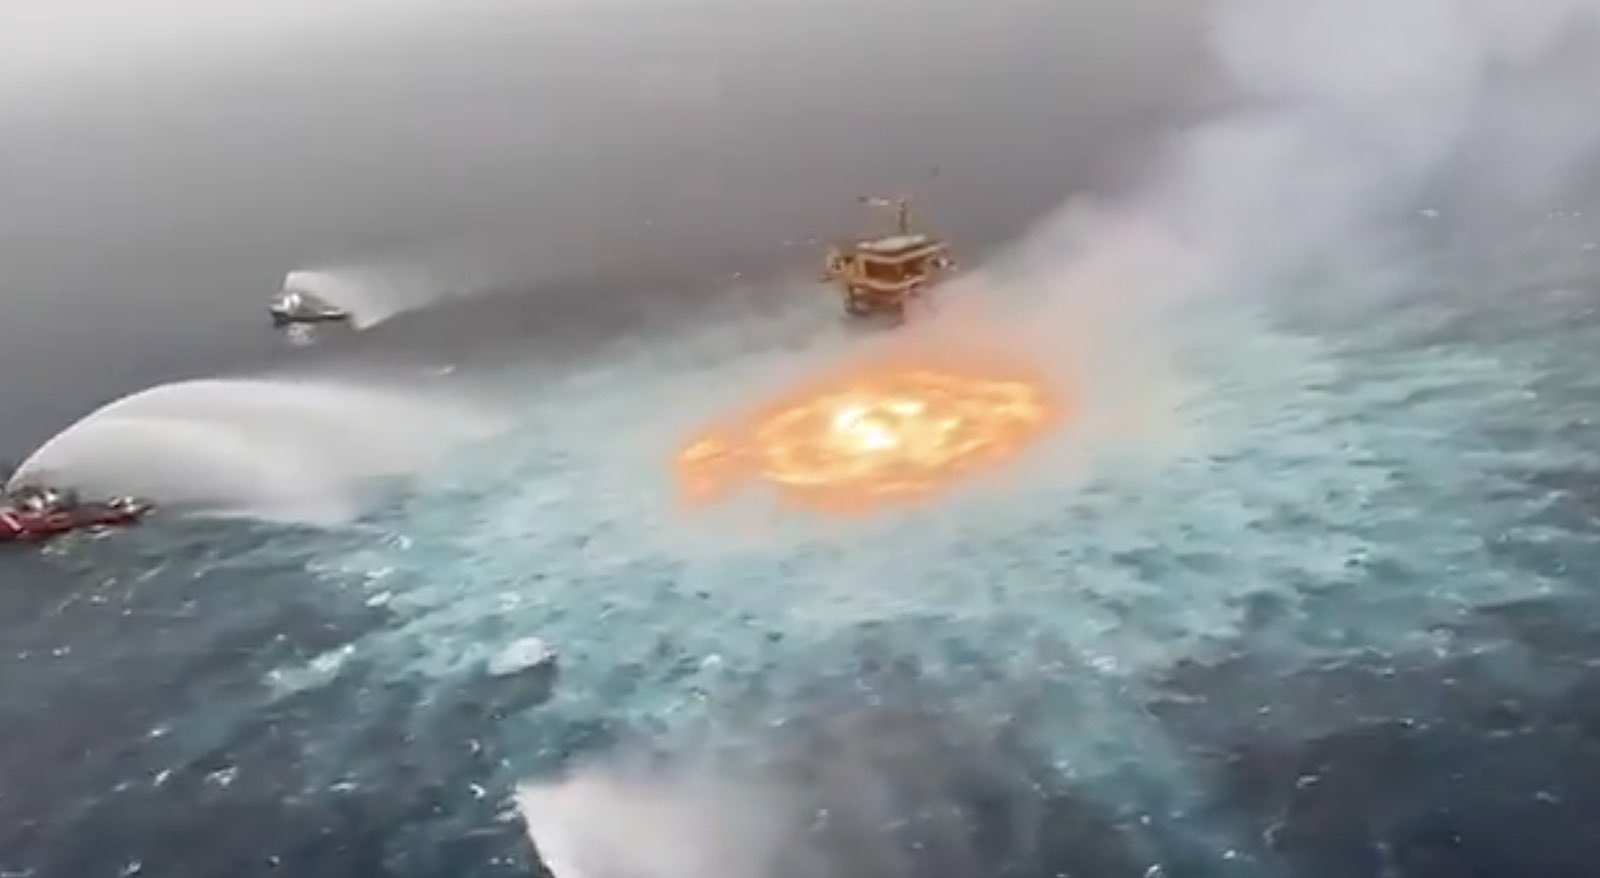 衝撃映像 水が燃える メキシコ湾岸で水中パイプラインからガス漏れ 火災が発生する 海外の反応 ぽぷめでぃ 海外の反応 日本の反応